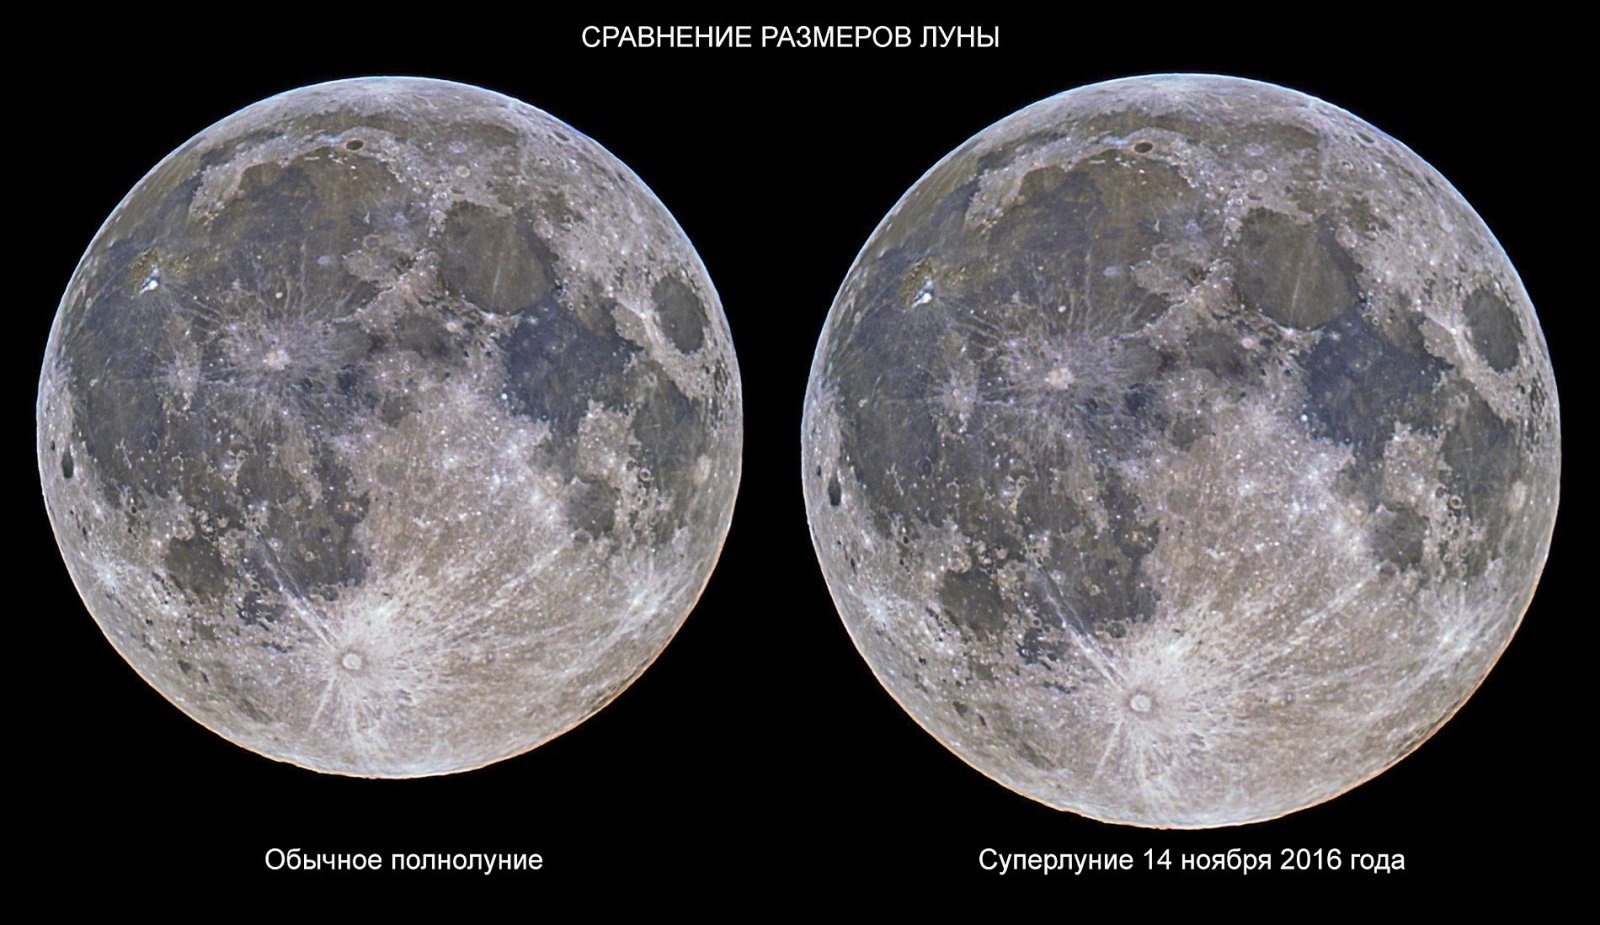 Сравнение размеров луны. Размер Луны. Луна по сравнению с землей. Размеры Луны в размеров земли. Размер Луны и земли сравнение.